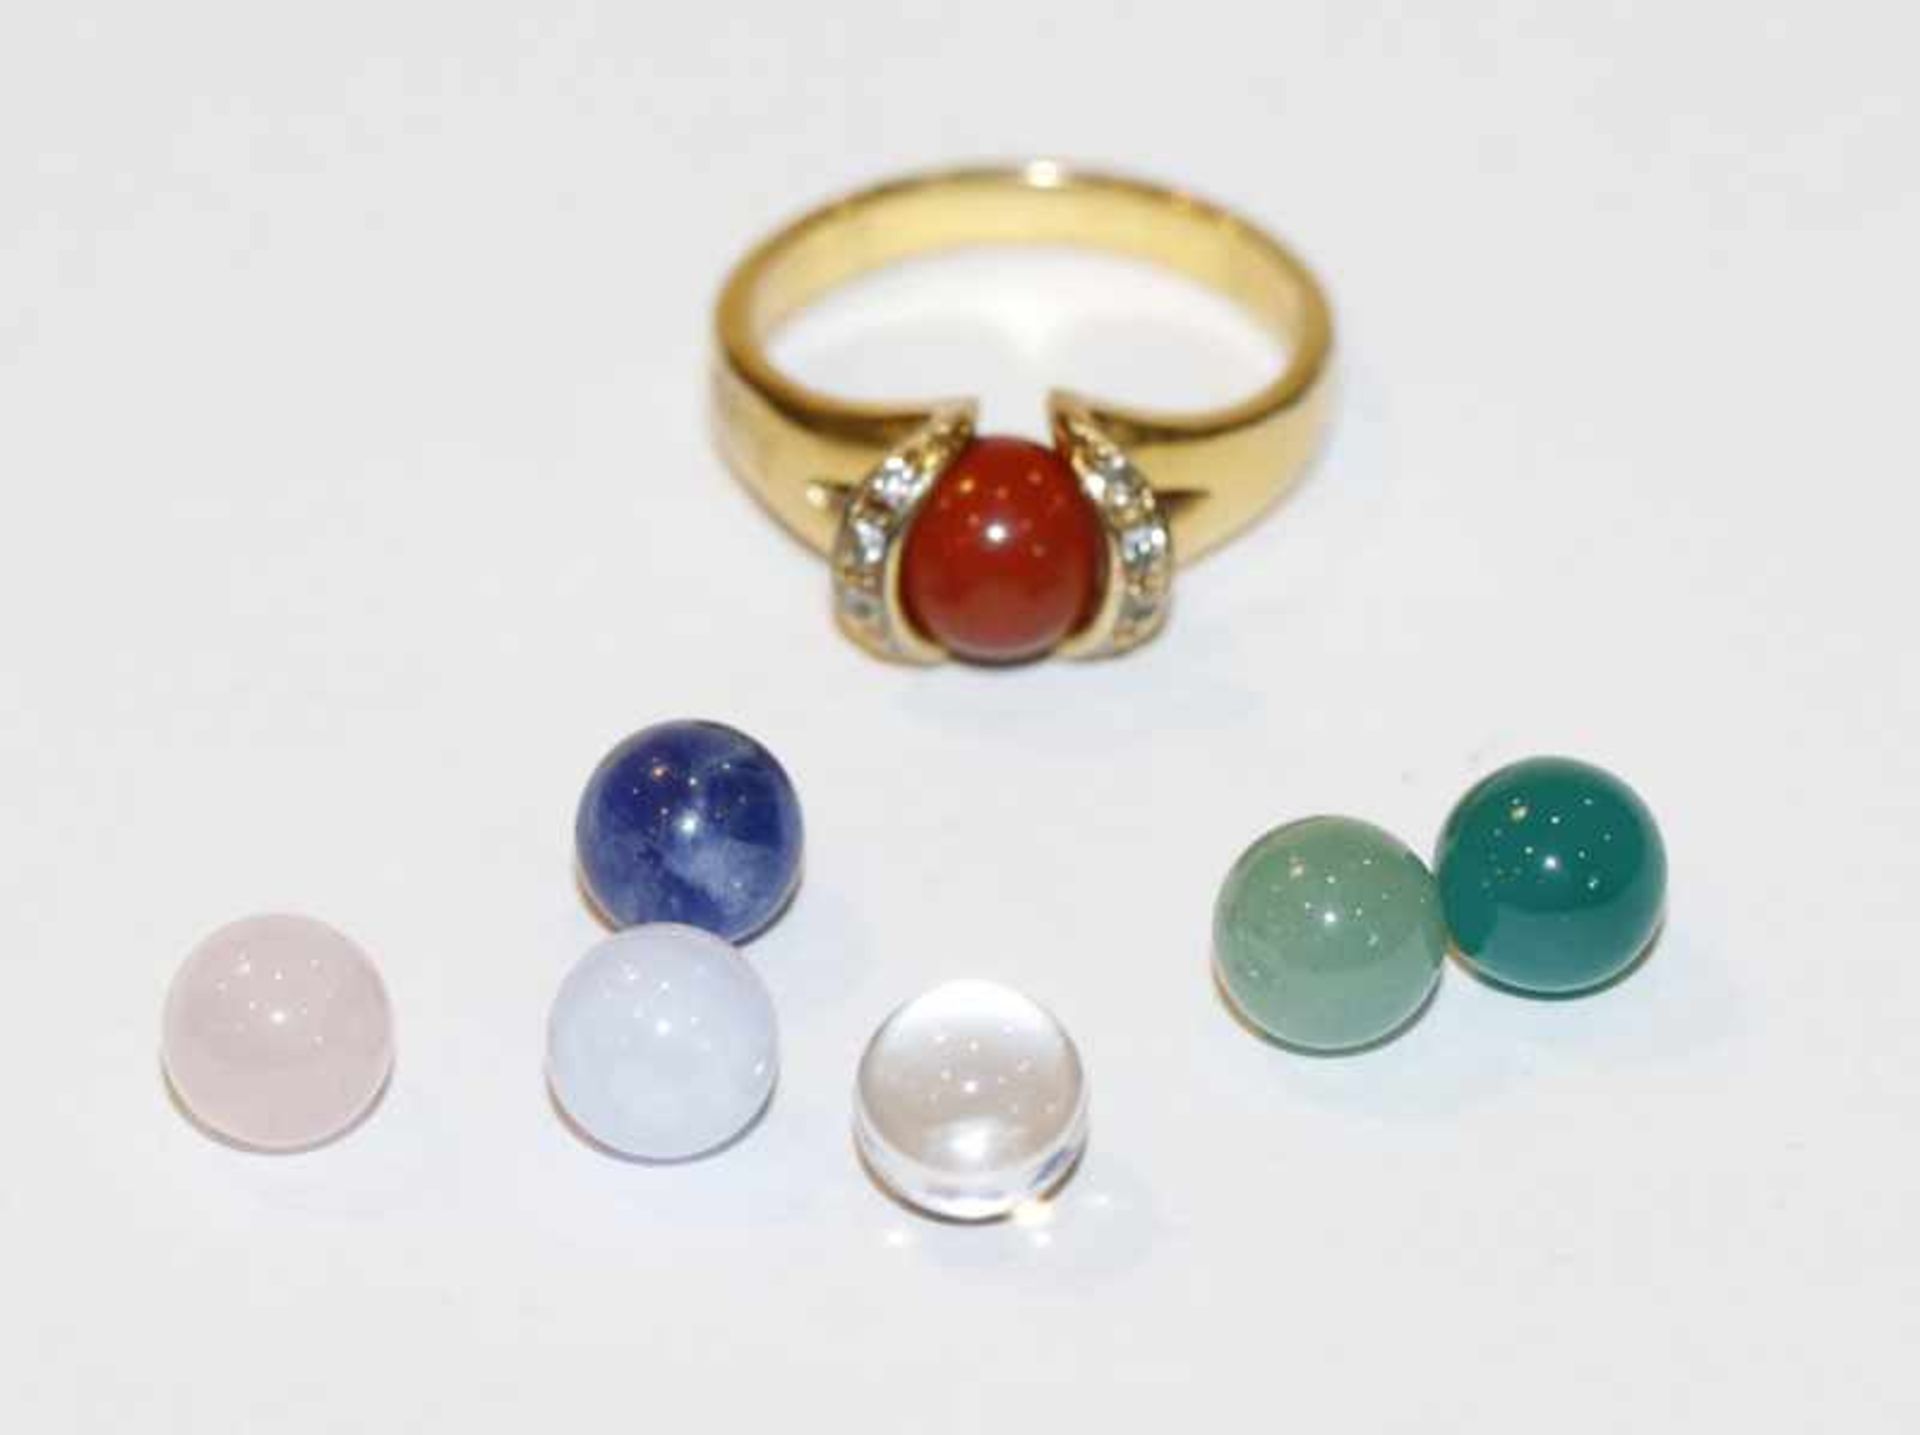 Sterlingsilber Ring, vergoldet mit 7 austauschbaren Farbsteinkugeln, Gr. 62